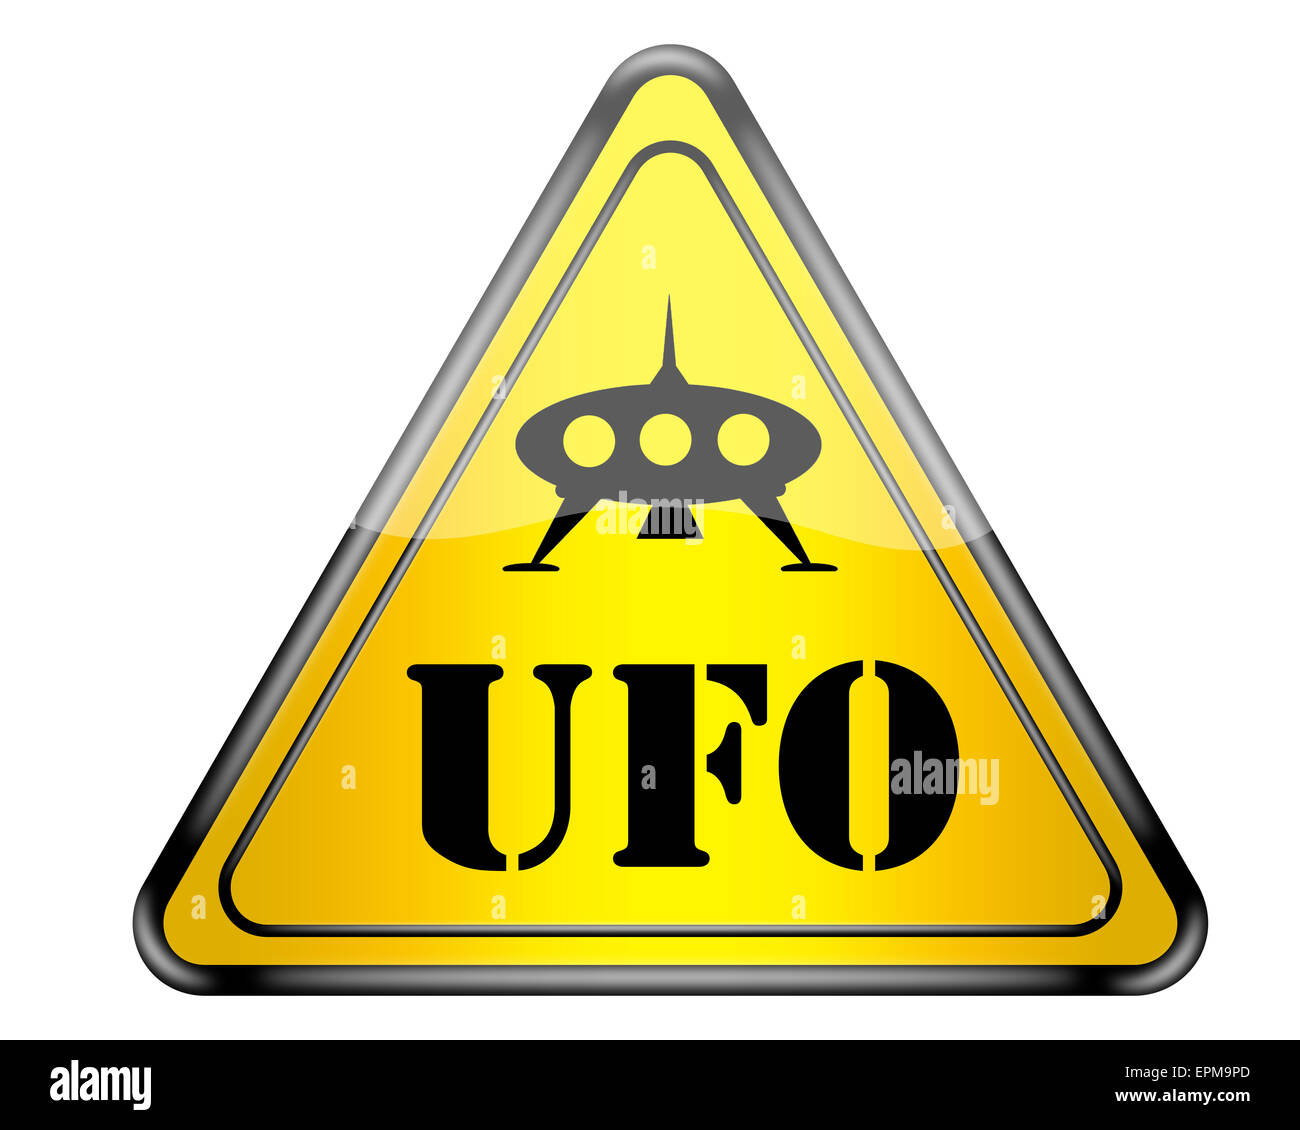 Fun UFO warning sign. Stock Photo